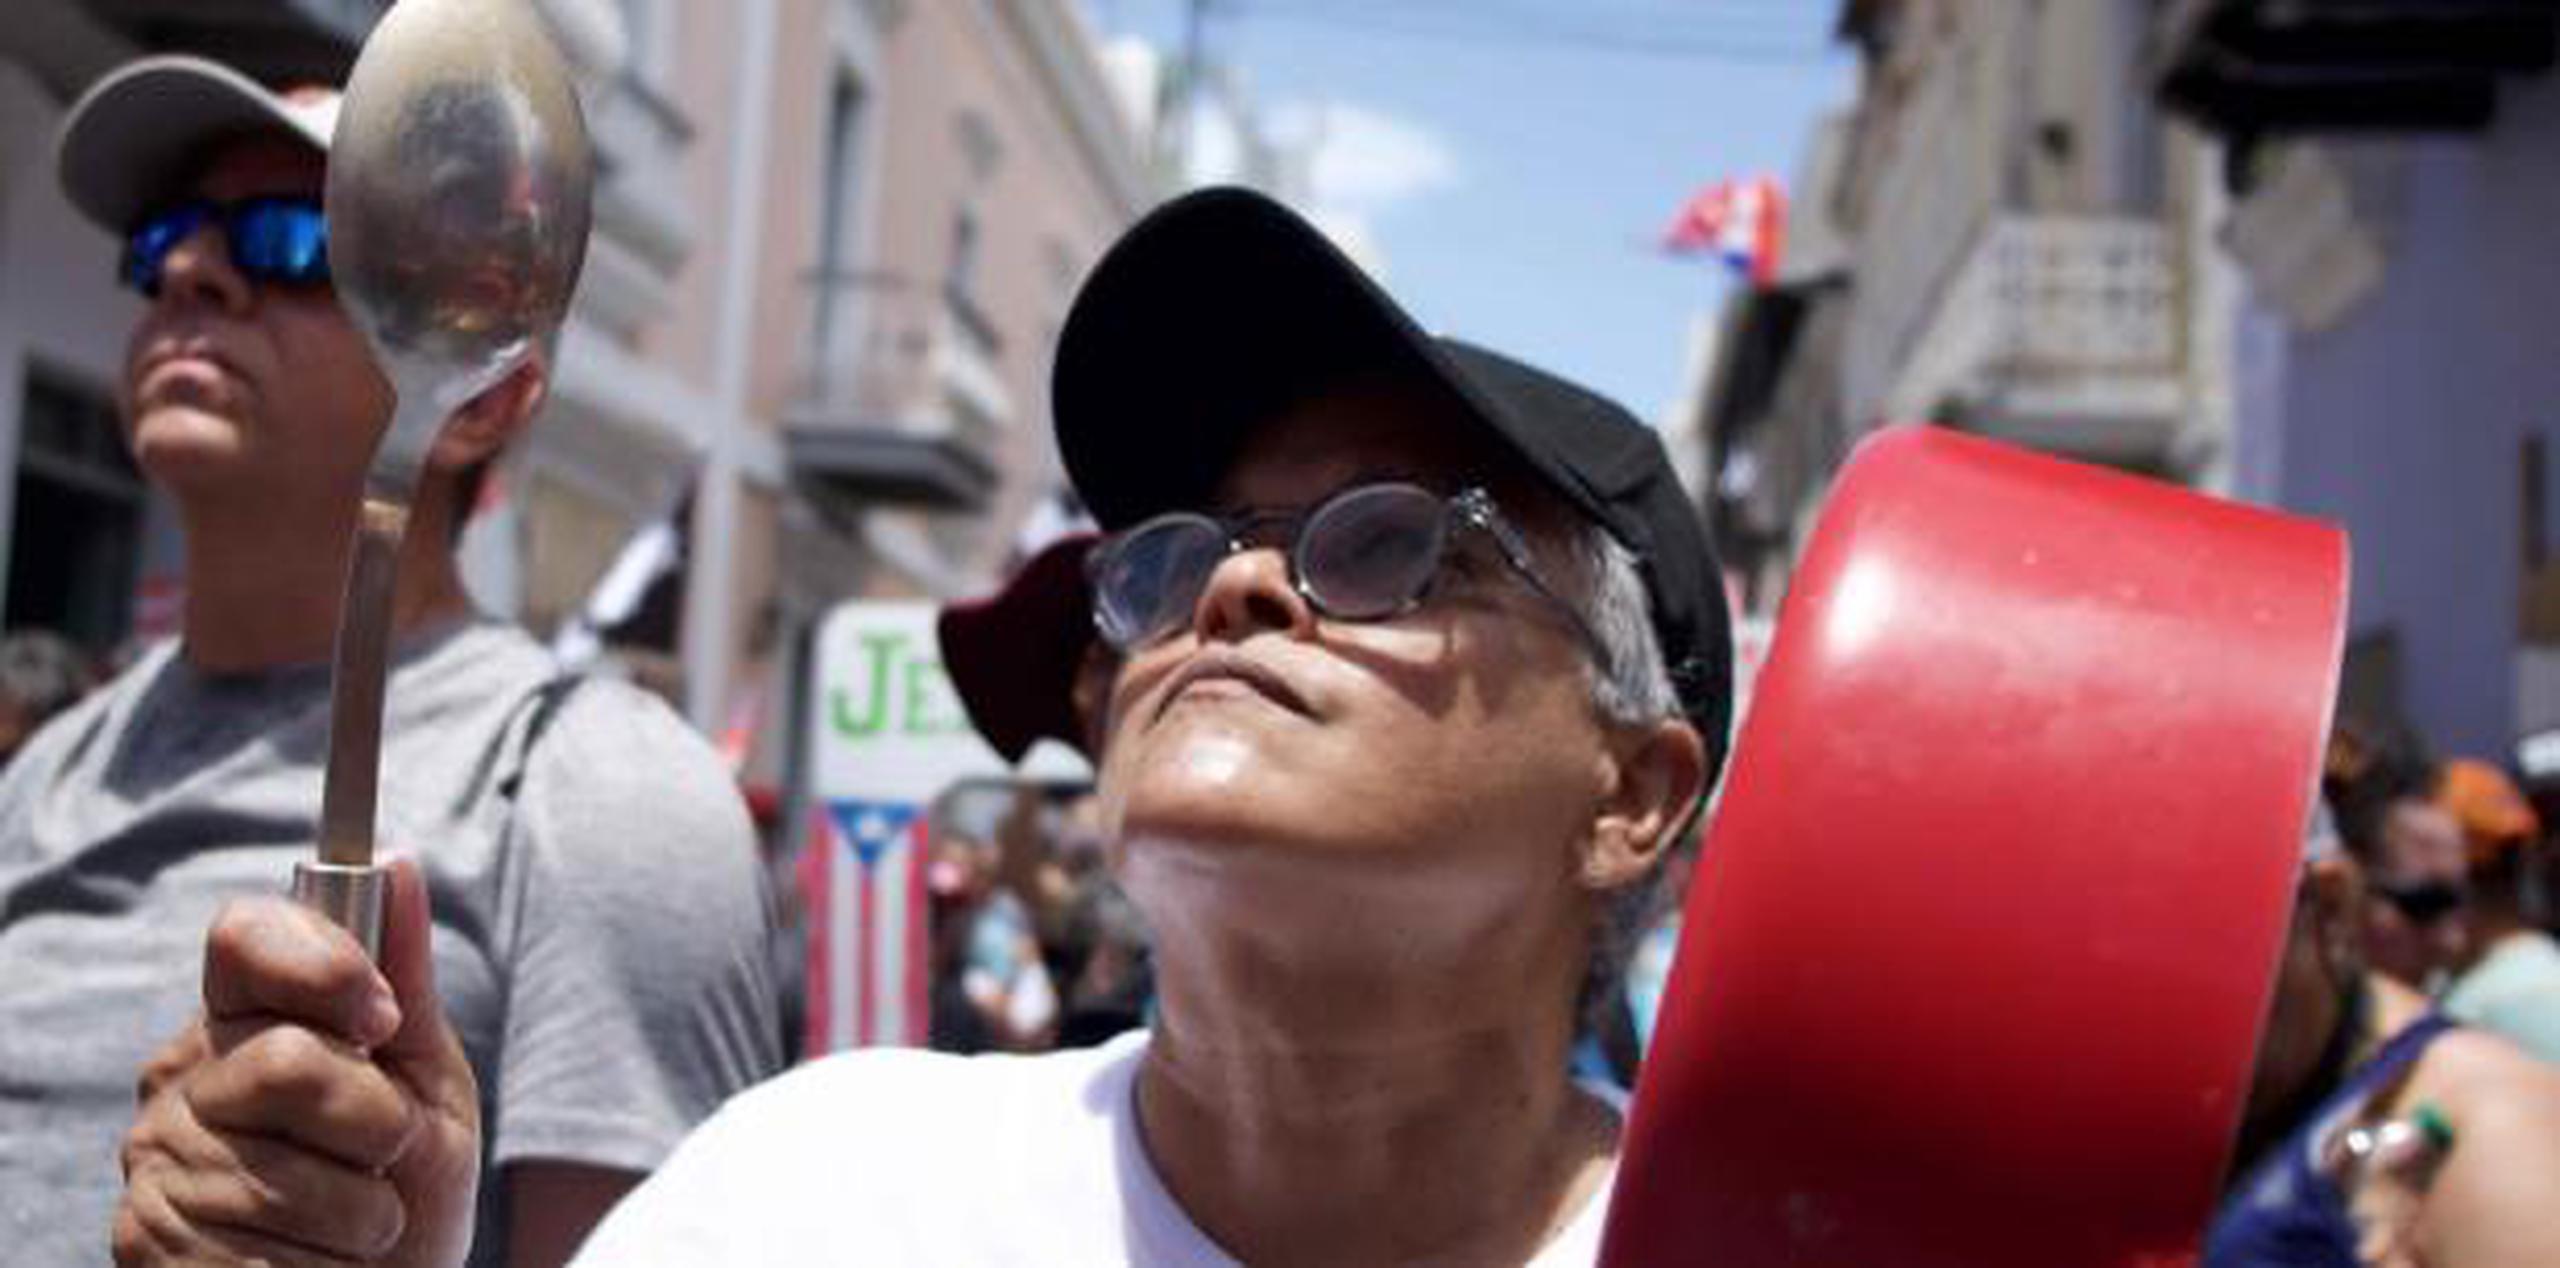 Vuelven a protestar por la salida del gobernador Ricardo Rosselló. (Ricky Reyes / Para Primera Hora)